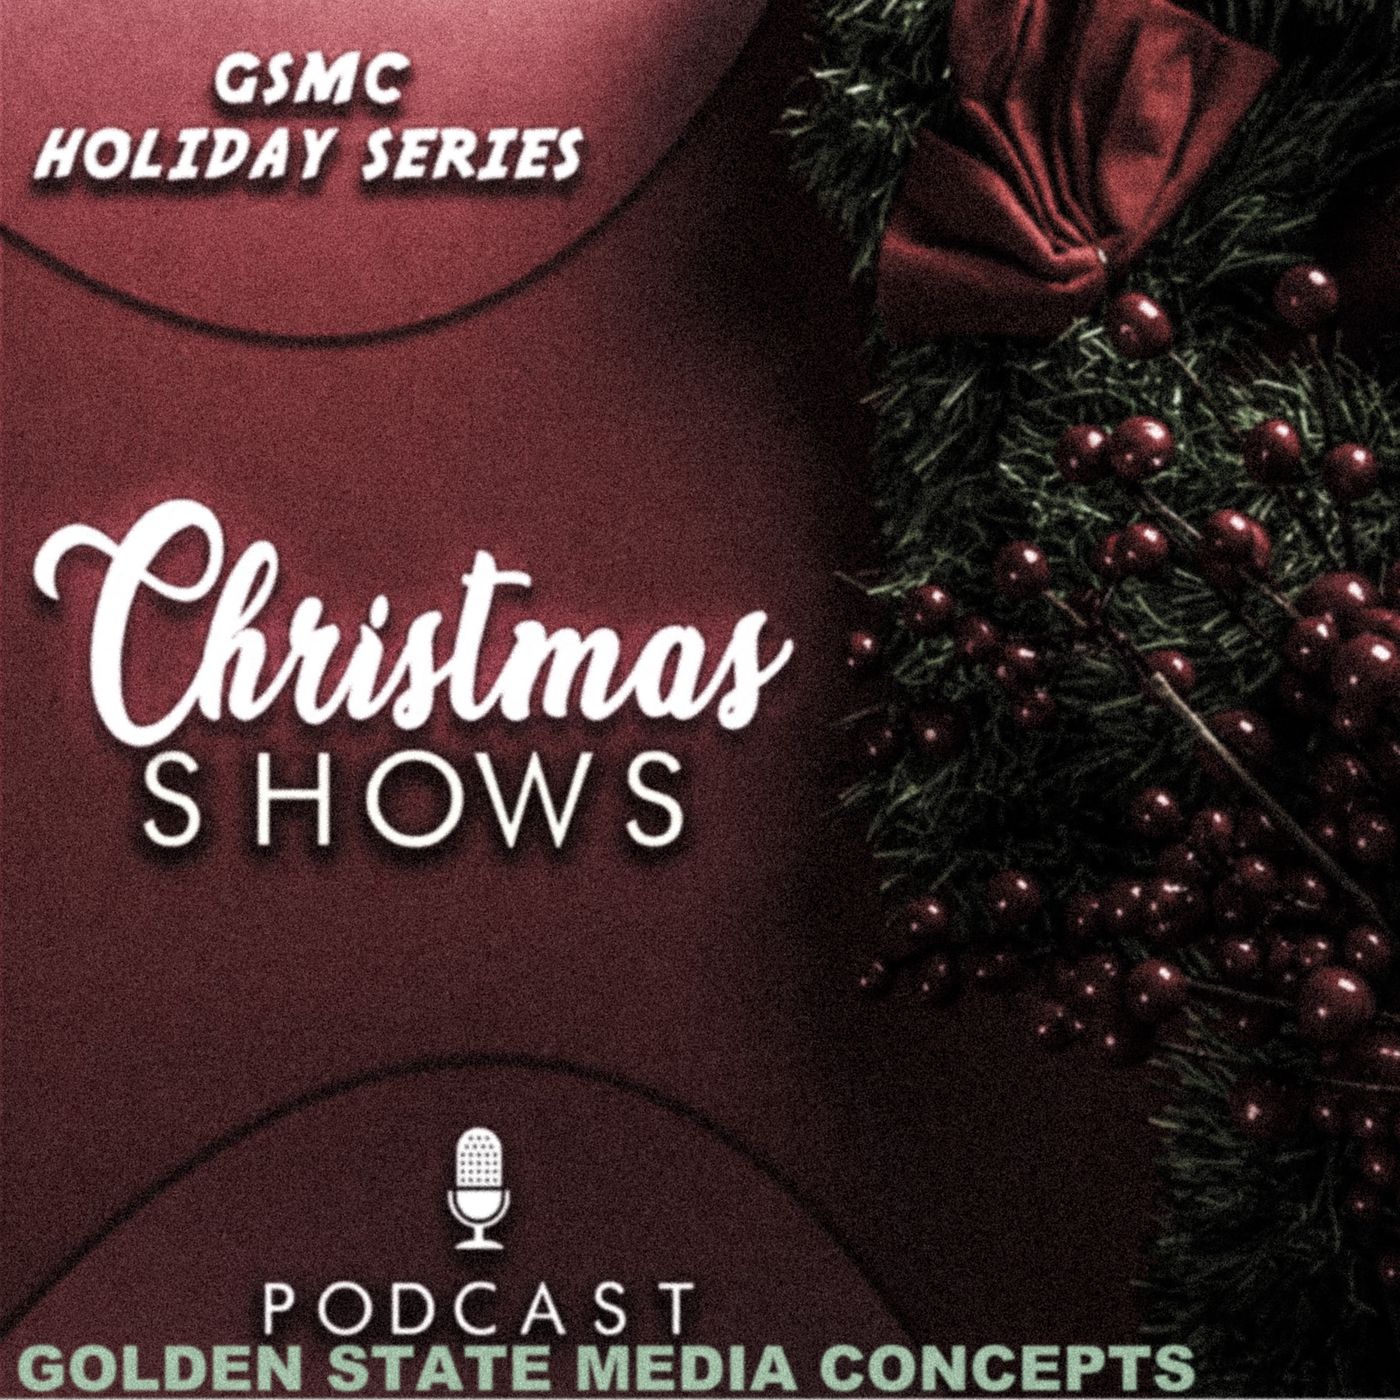 GSMC Holiday Series: Christmas Shows